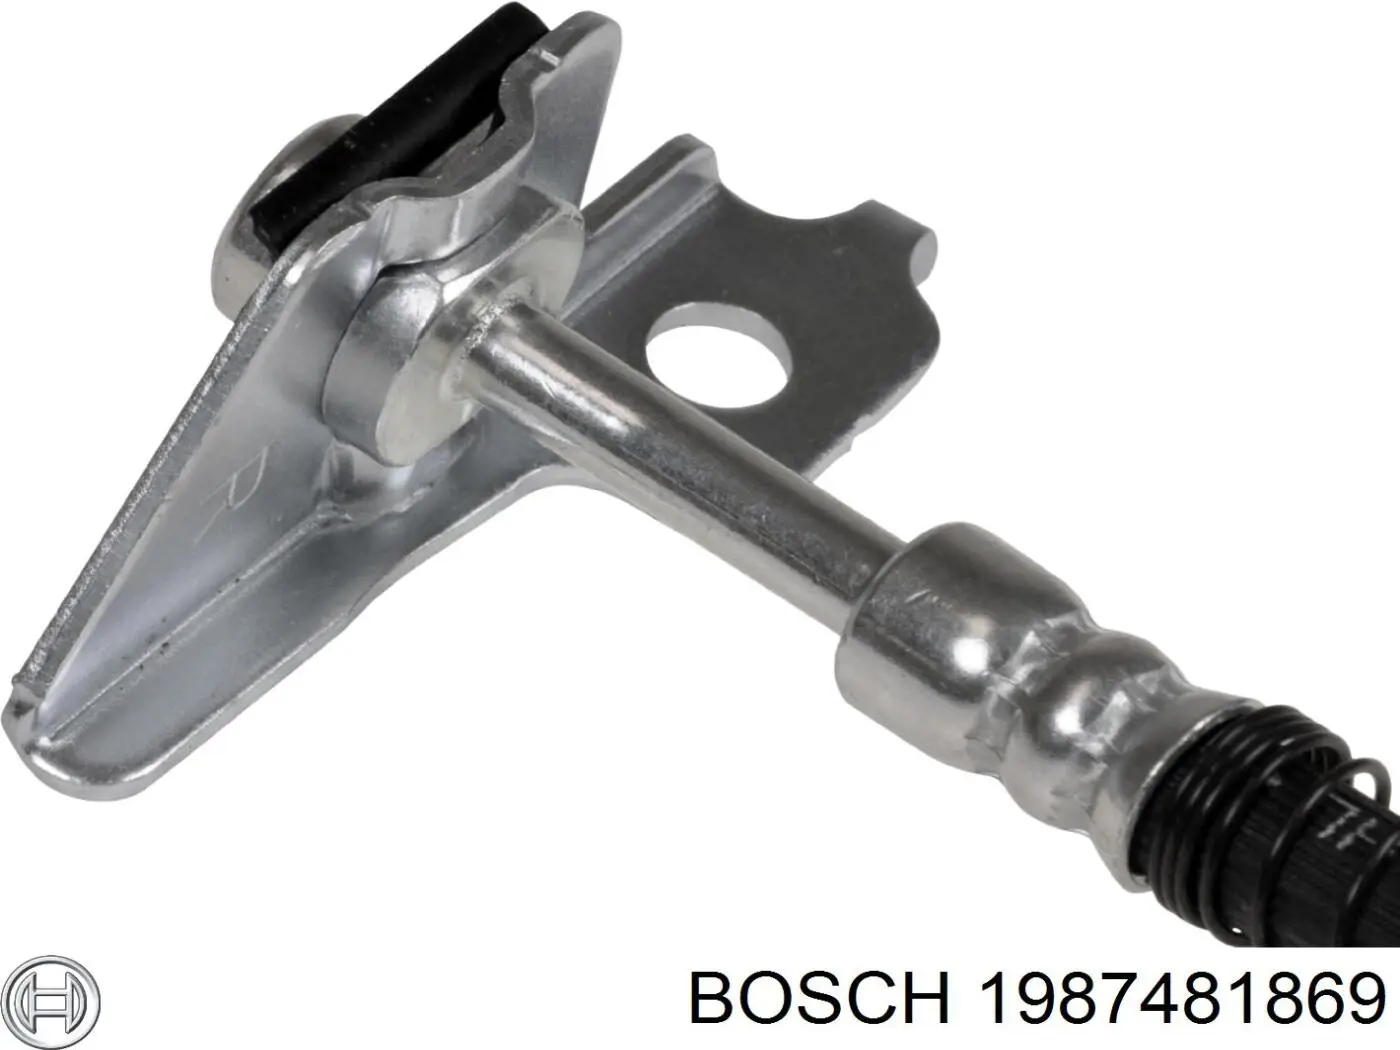 1987481869 Bosch latiguillos de freno delantero derecho